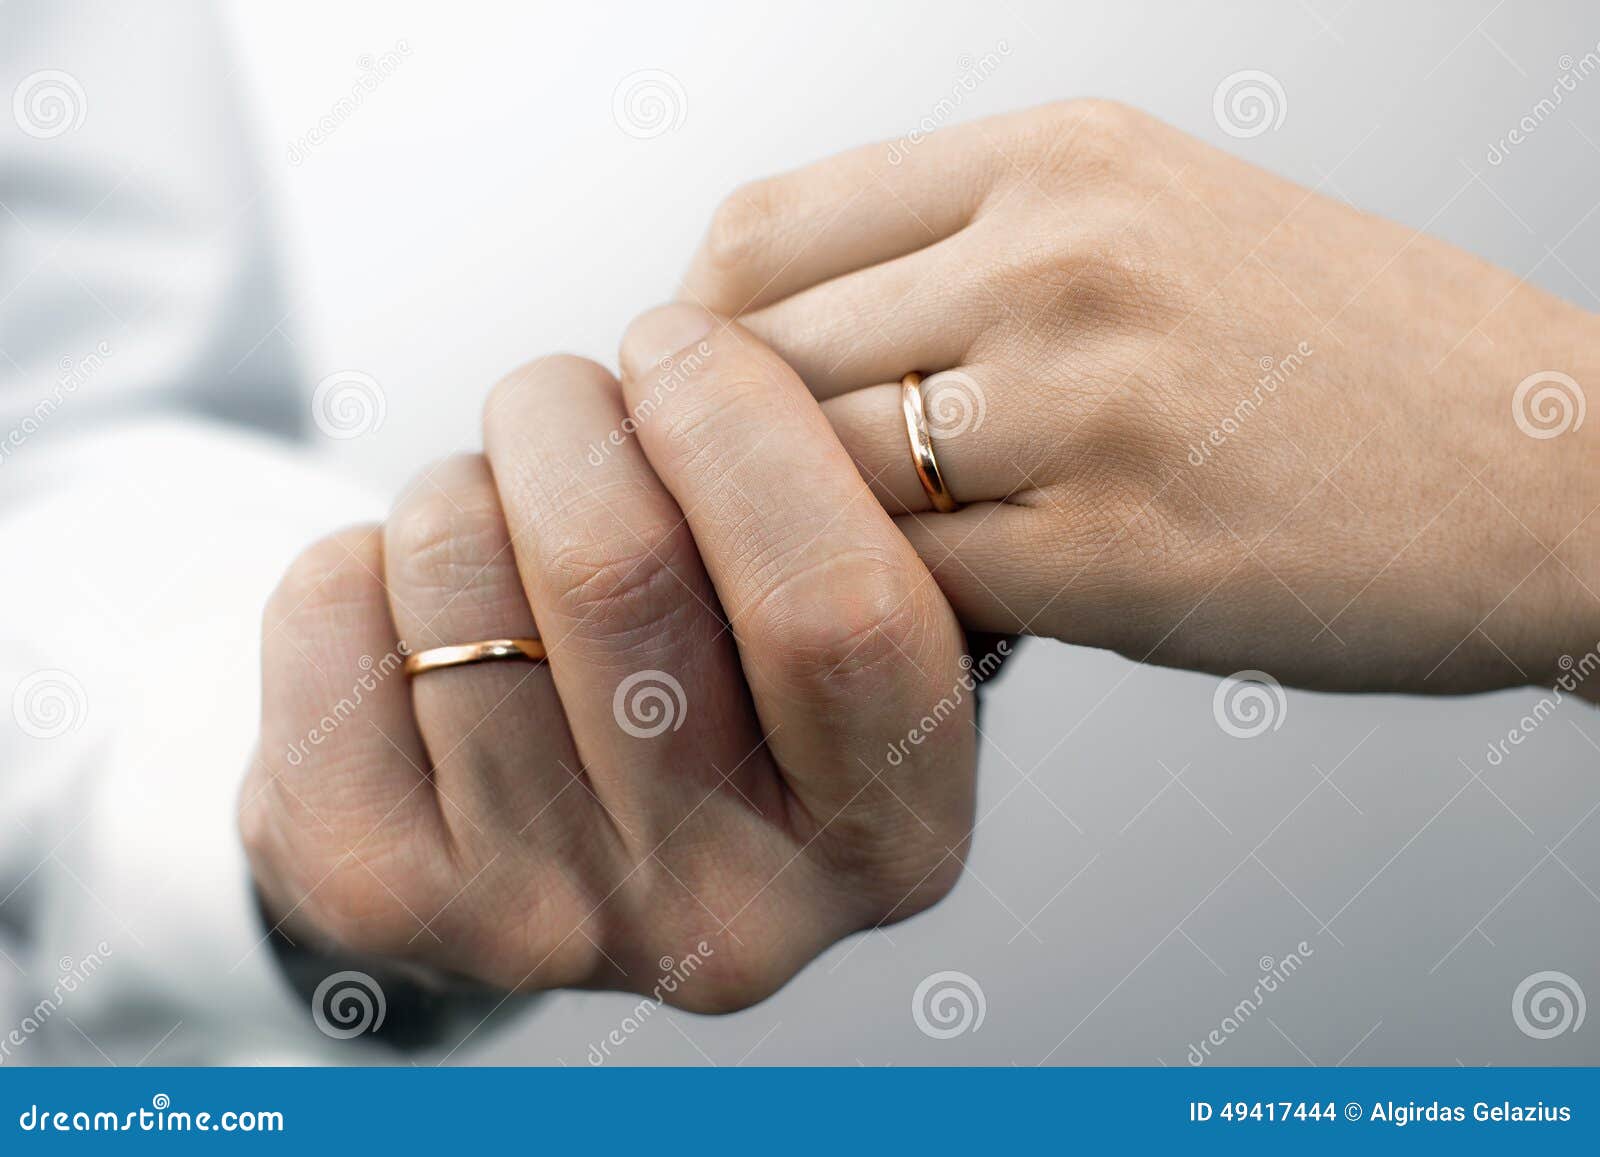 На какой руке носить обручальное кольцо вдове. Обручальные кольца на руках. Две руки с обручальными кольцами. Две руки с обручальными кольцами фото. Картинка гейм овер с обручальными кольцами.